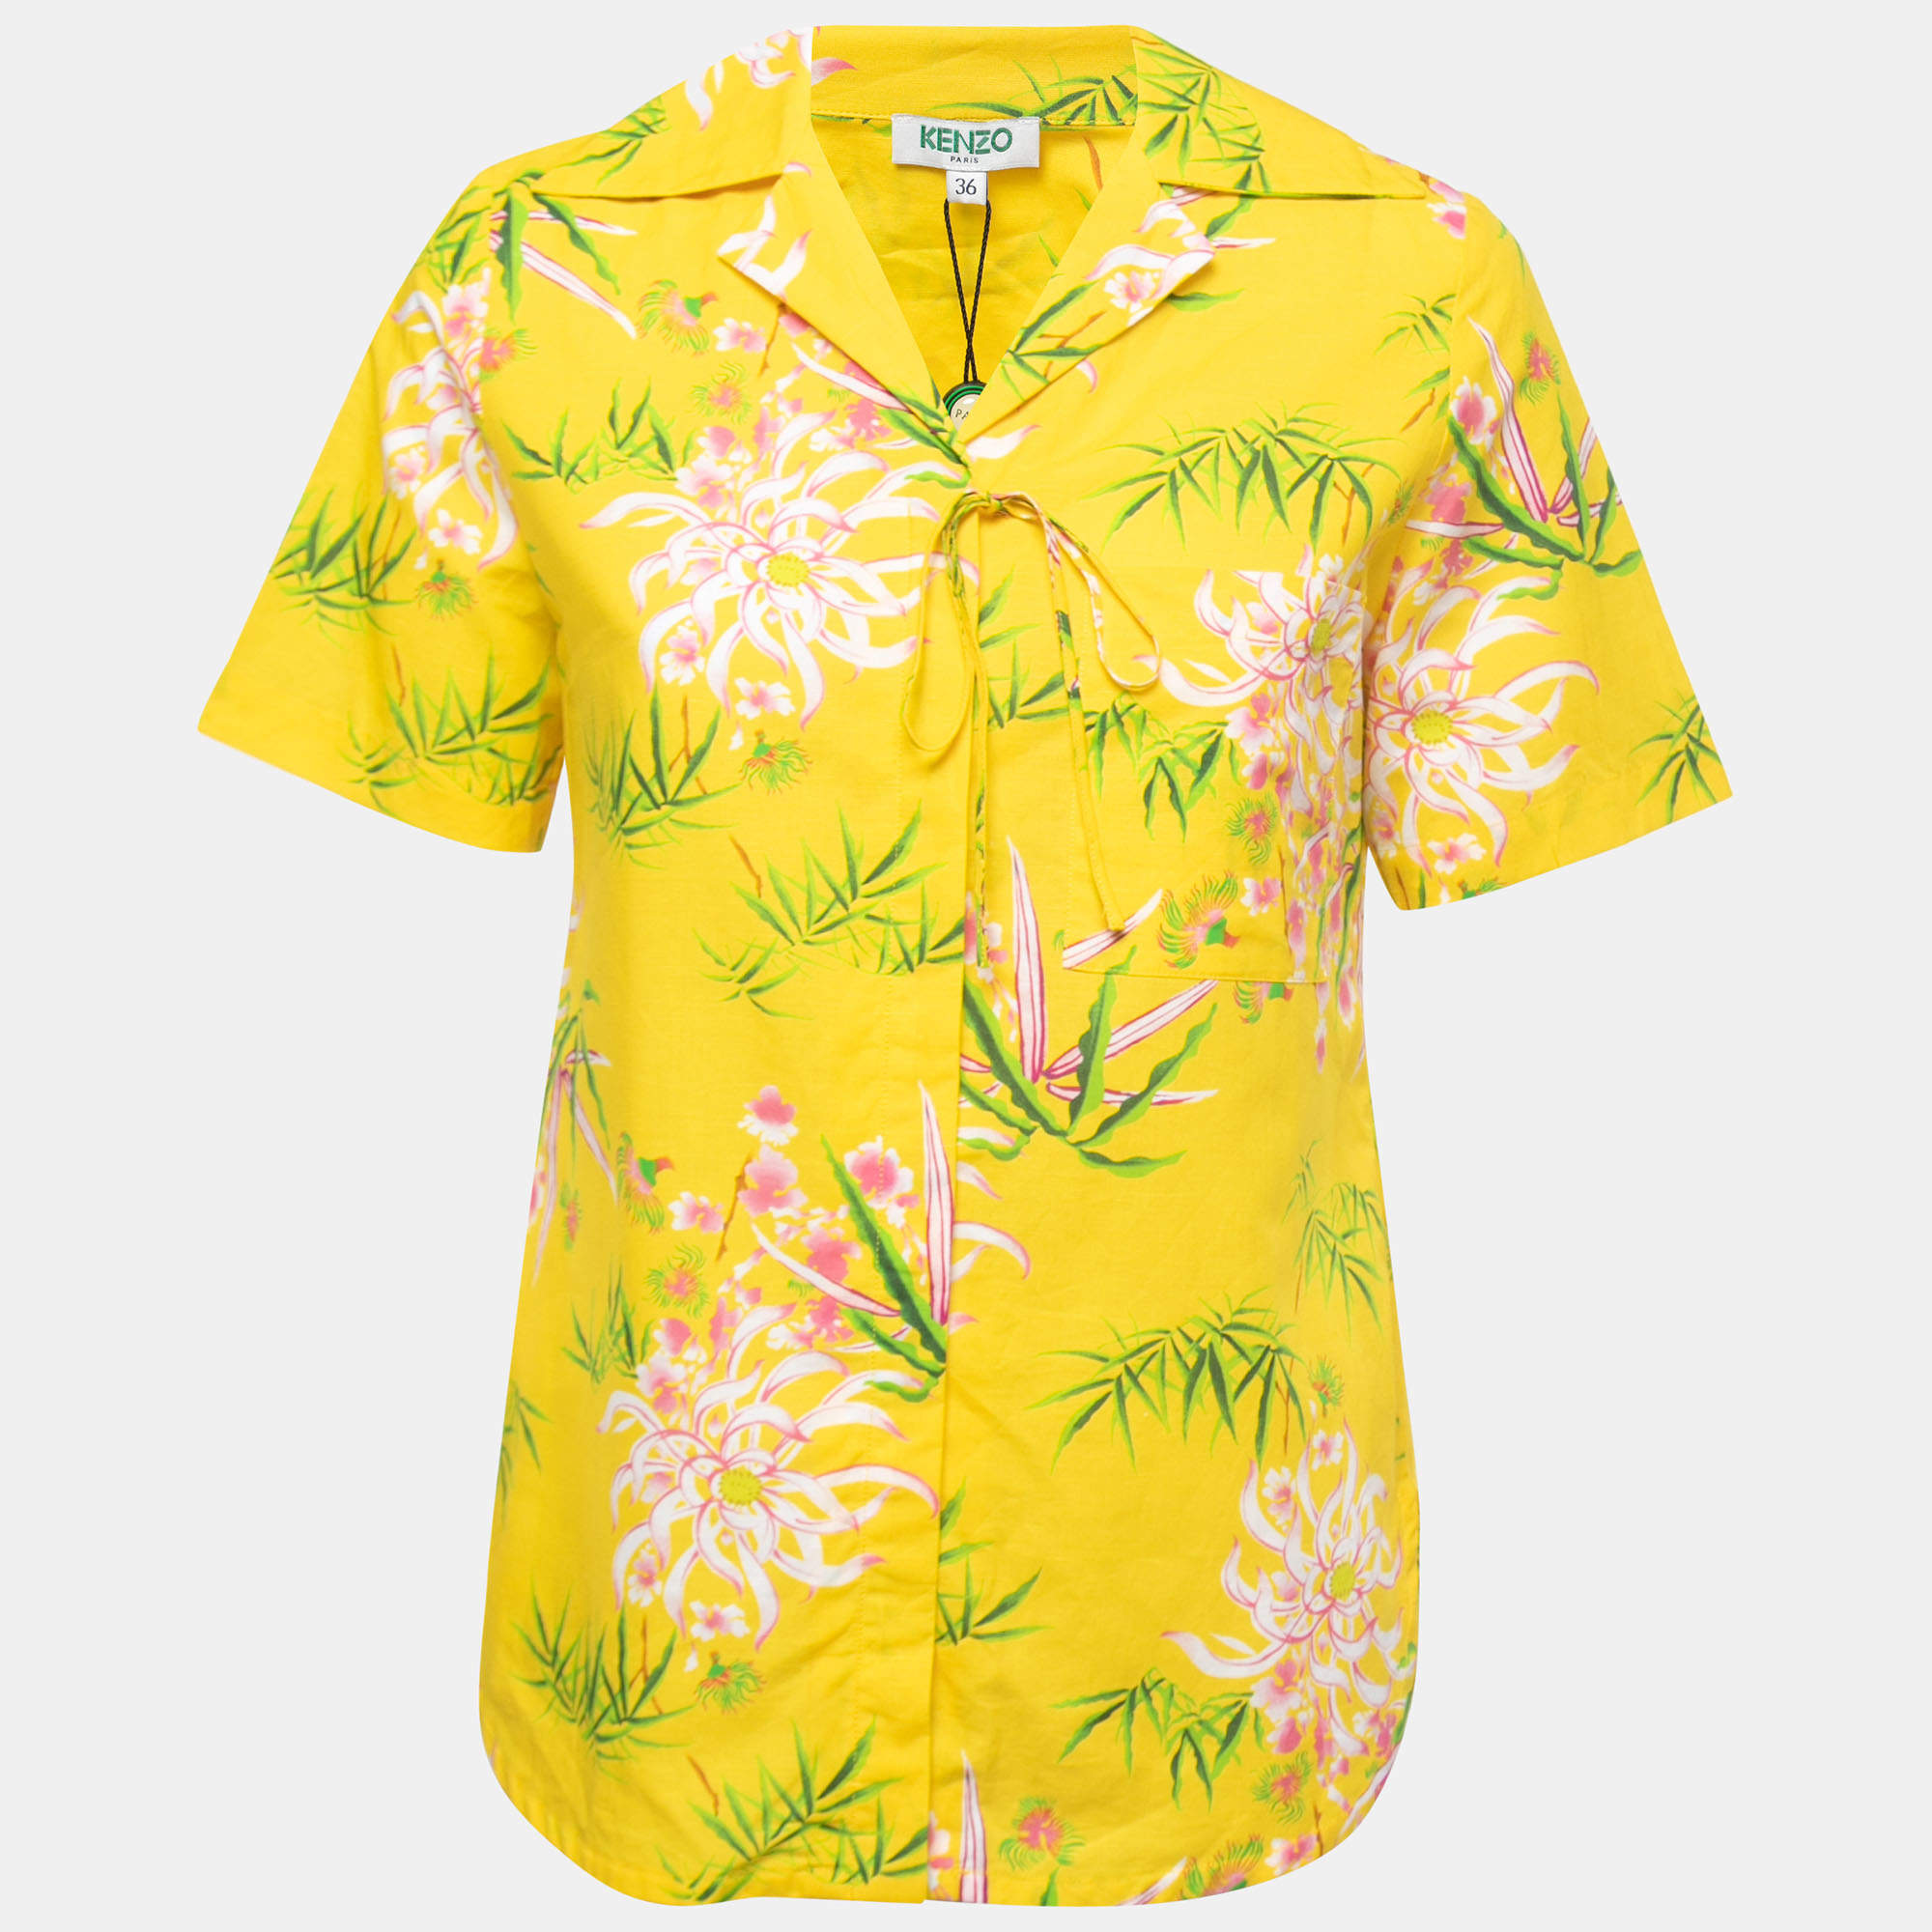 LUXURY Louis Vuitton Tropical Yellow Hawaiian Shirt Beach Short